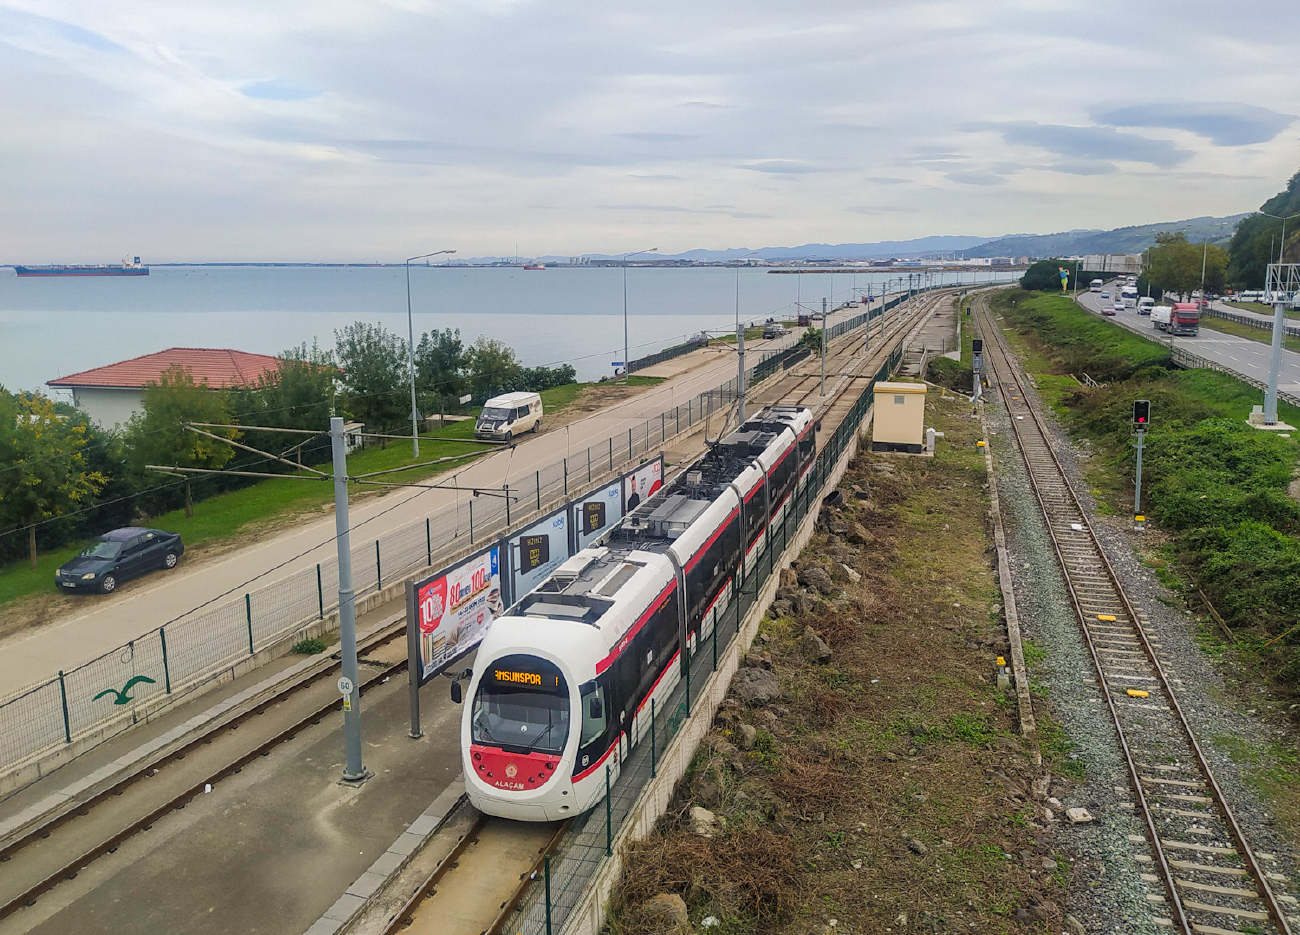 Самсун, AnsaldoBreda Sirio № 55-001; Самсун — Трамвайные линии и инфраструктура